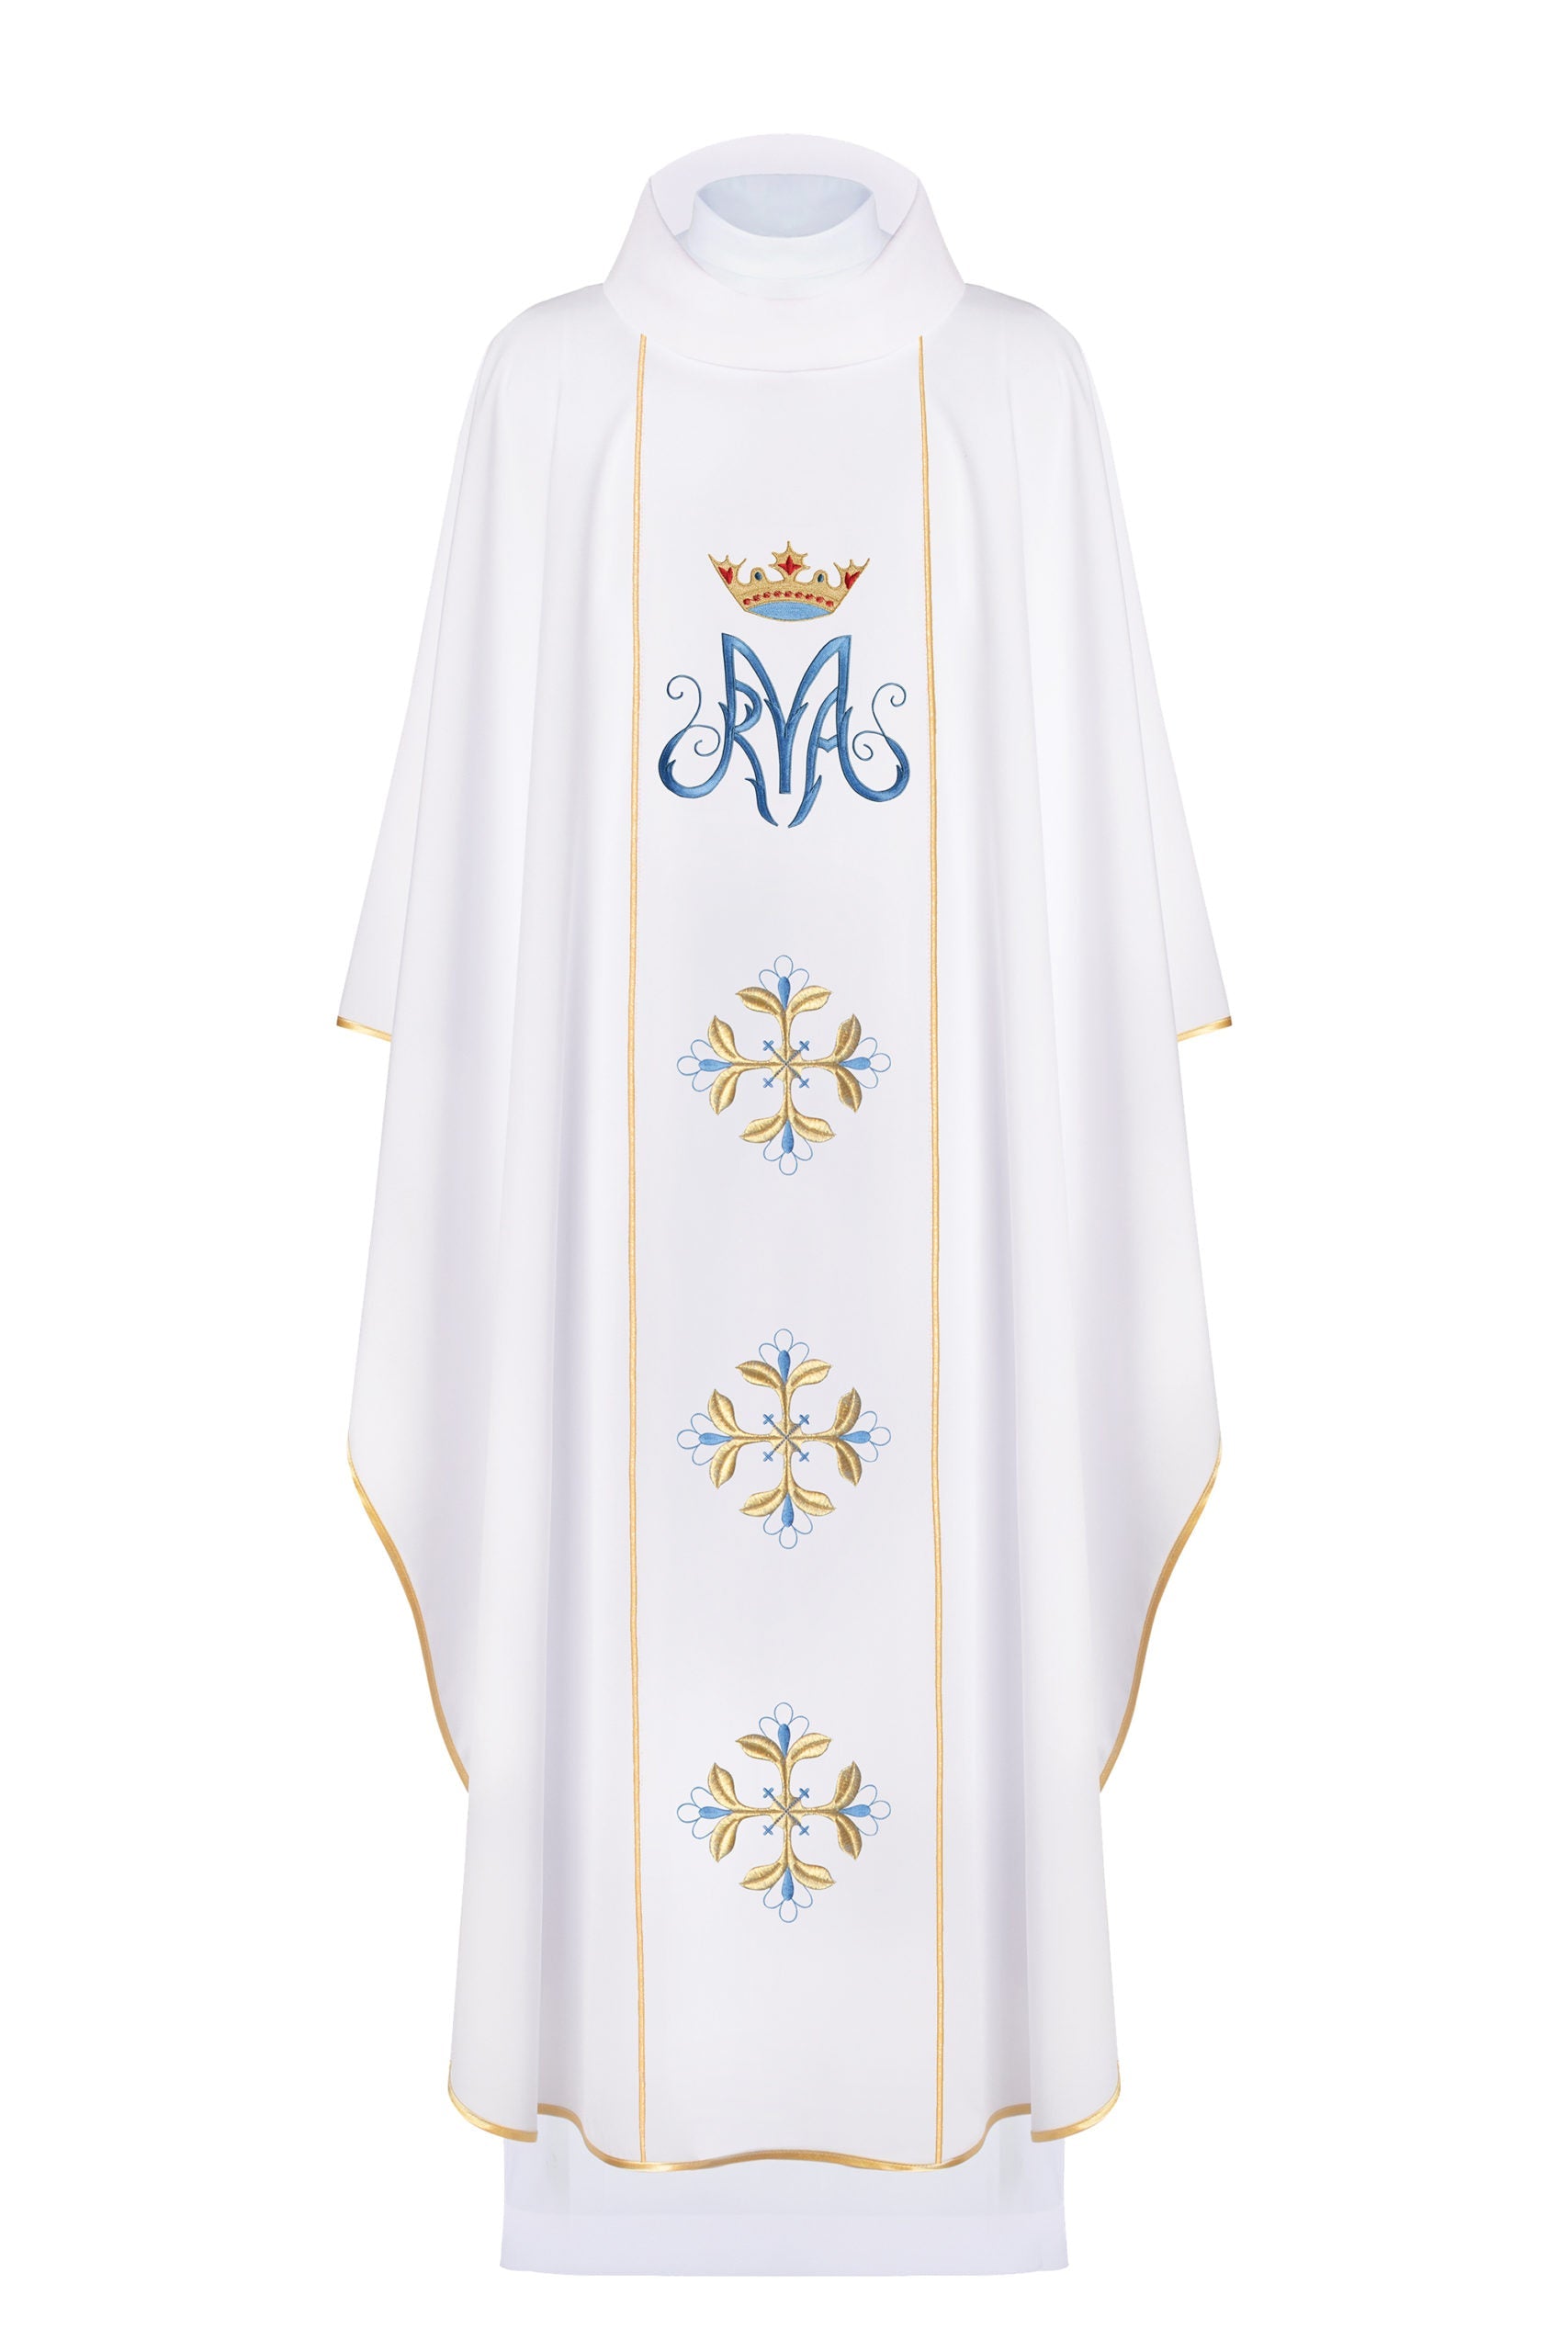 Biały ornat liturgiczny maryjny z pasem